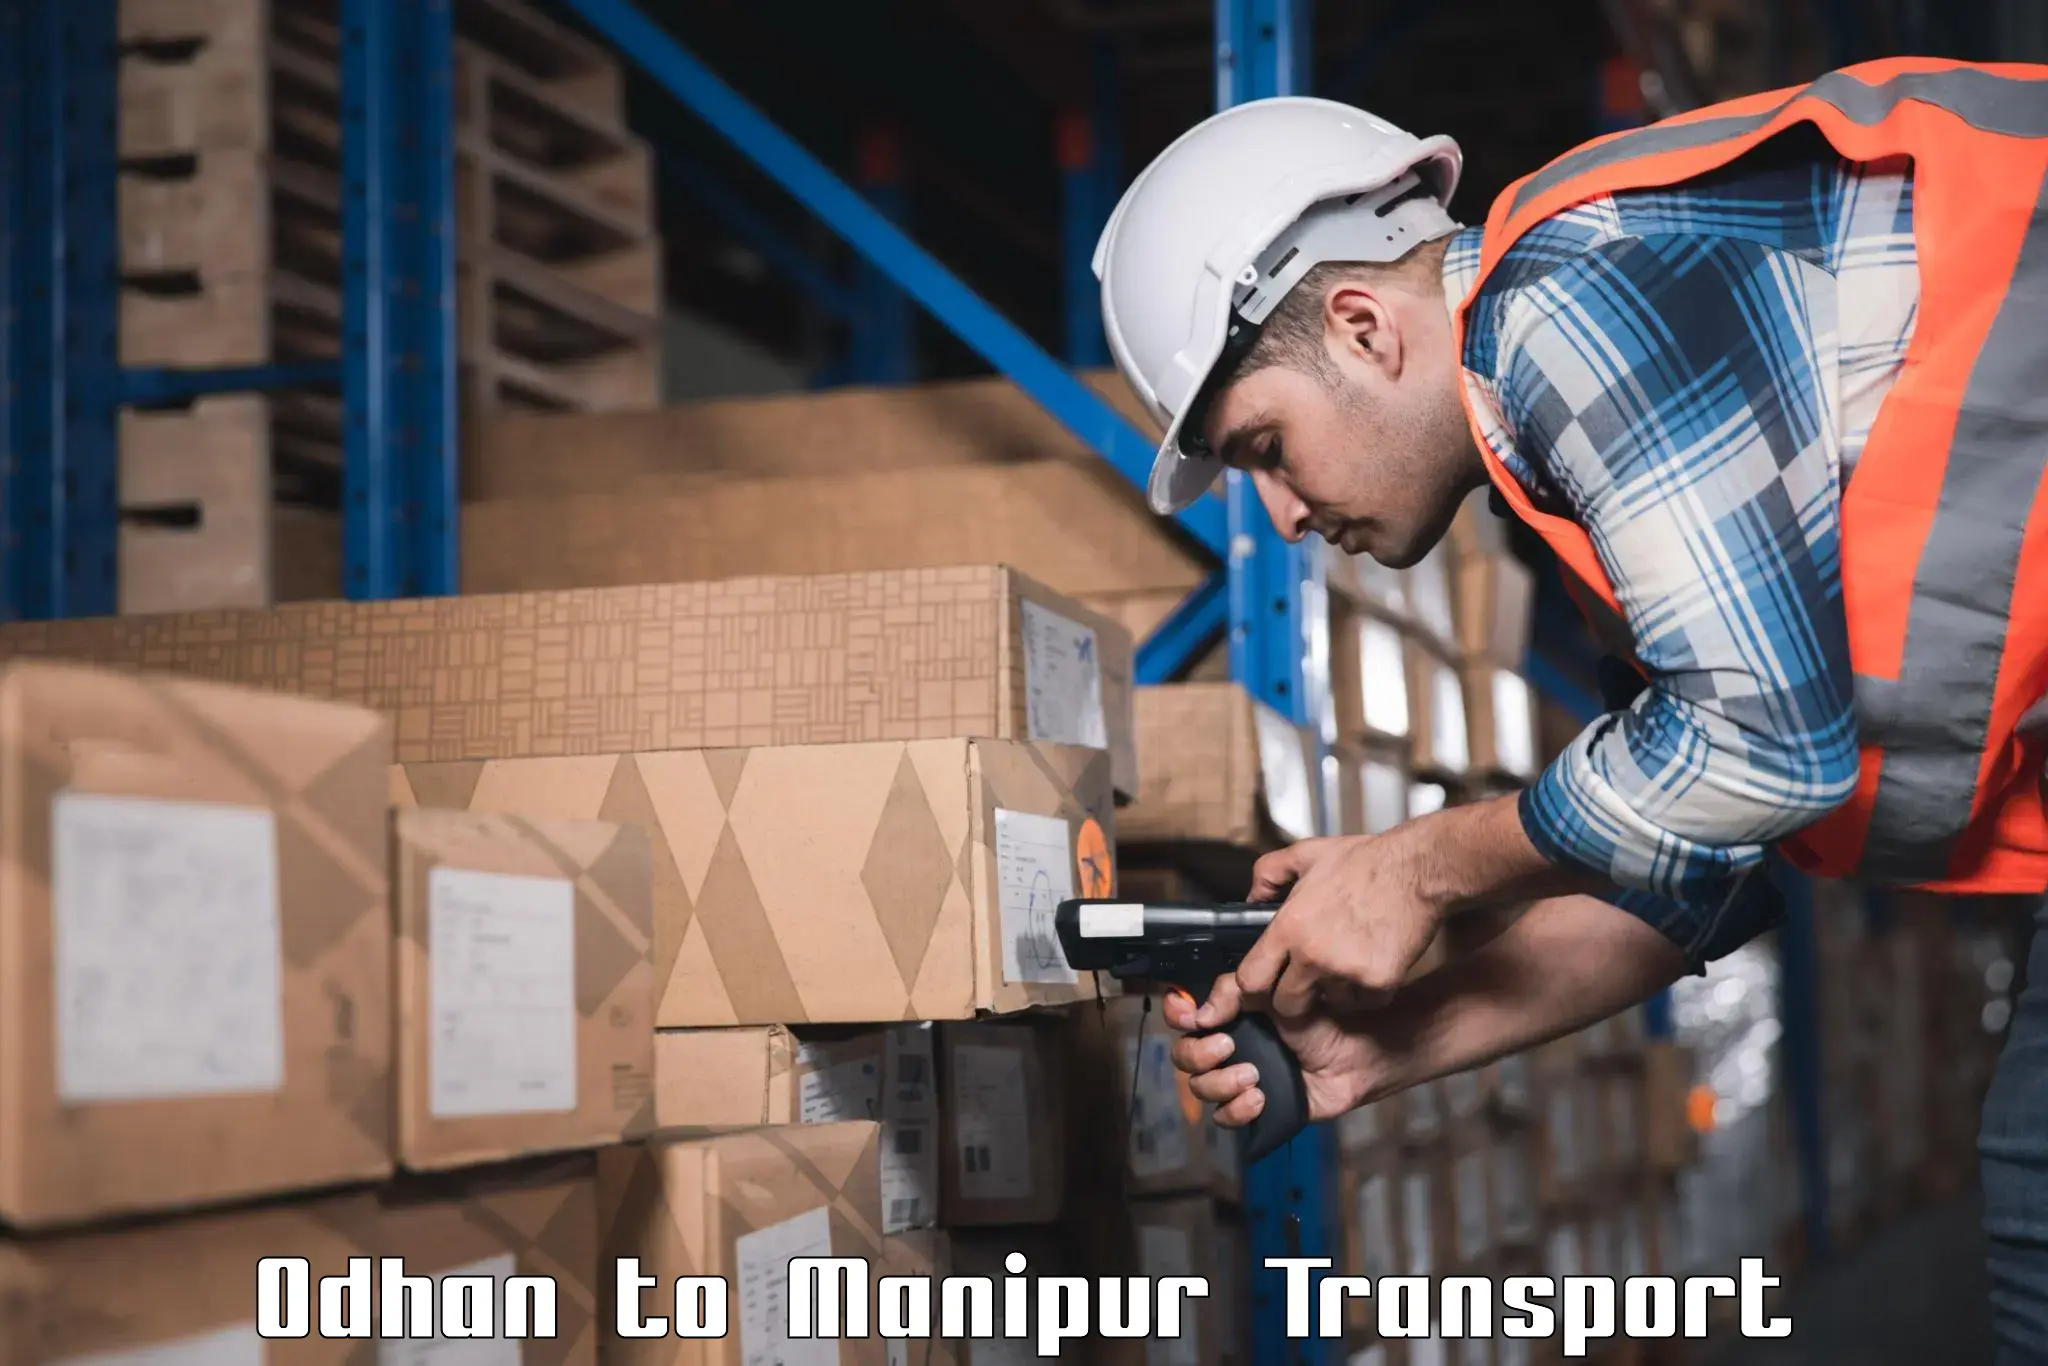 Shipping partner Odhan to Kangpokpi